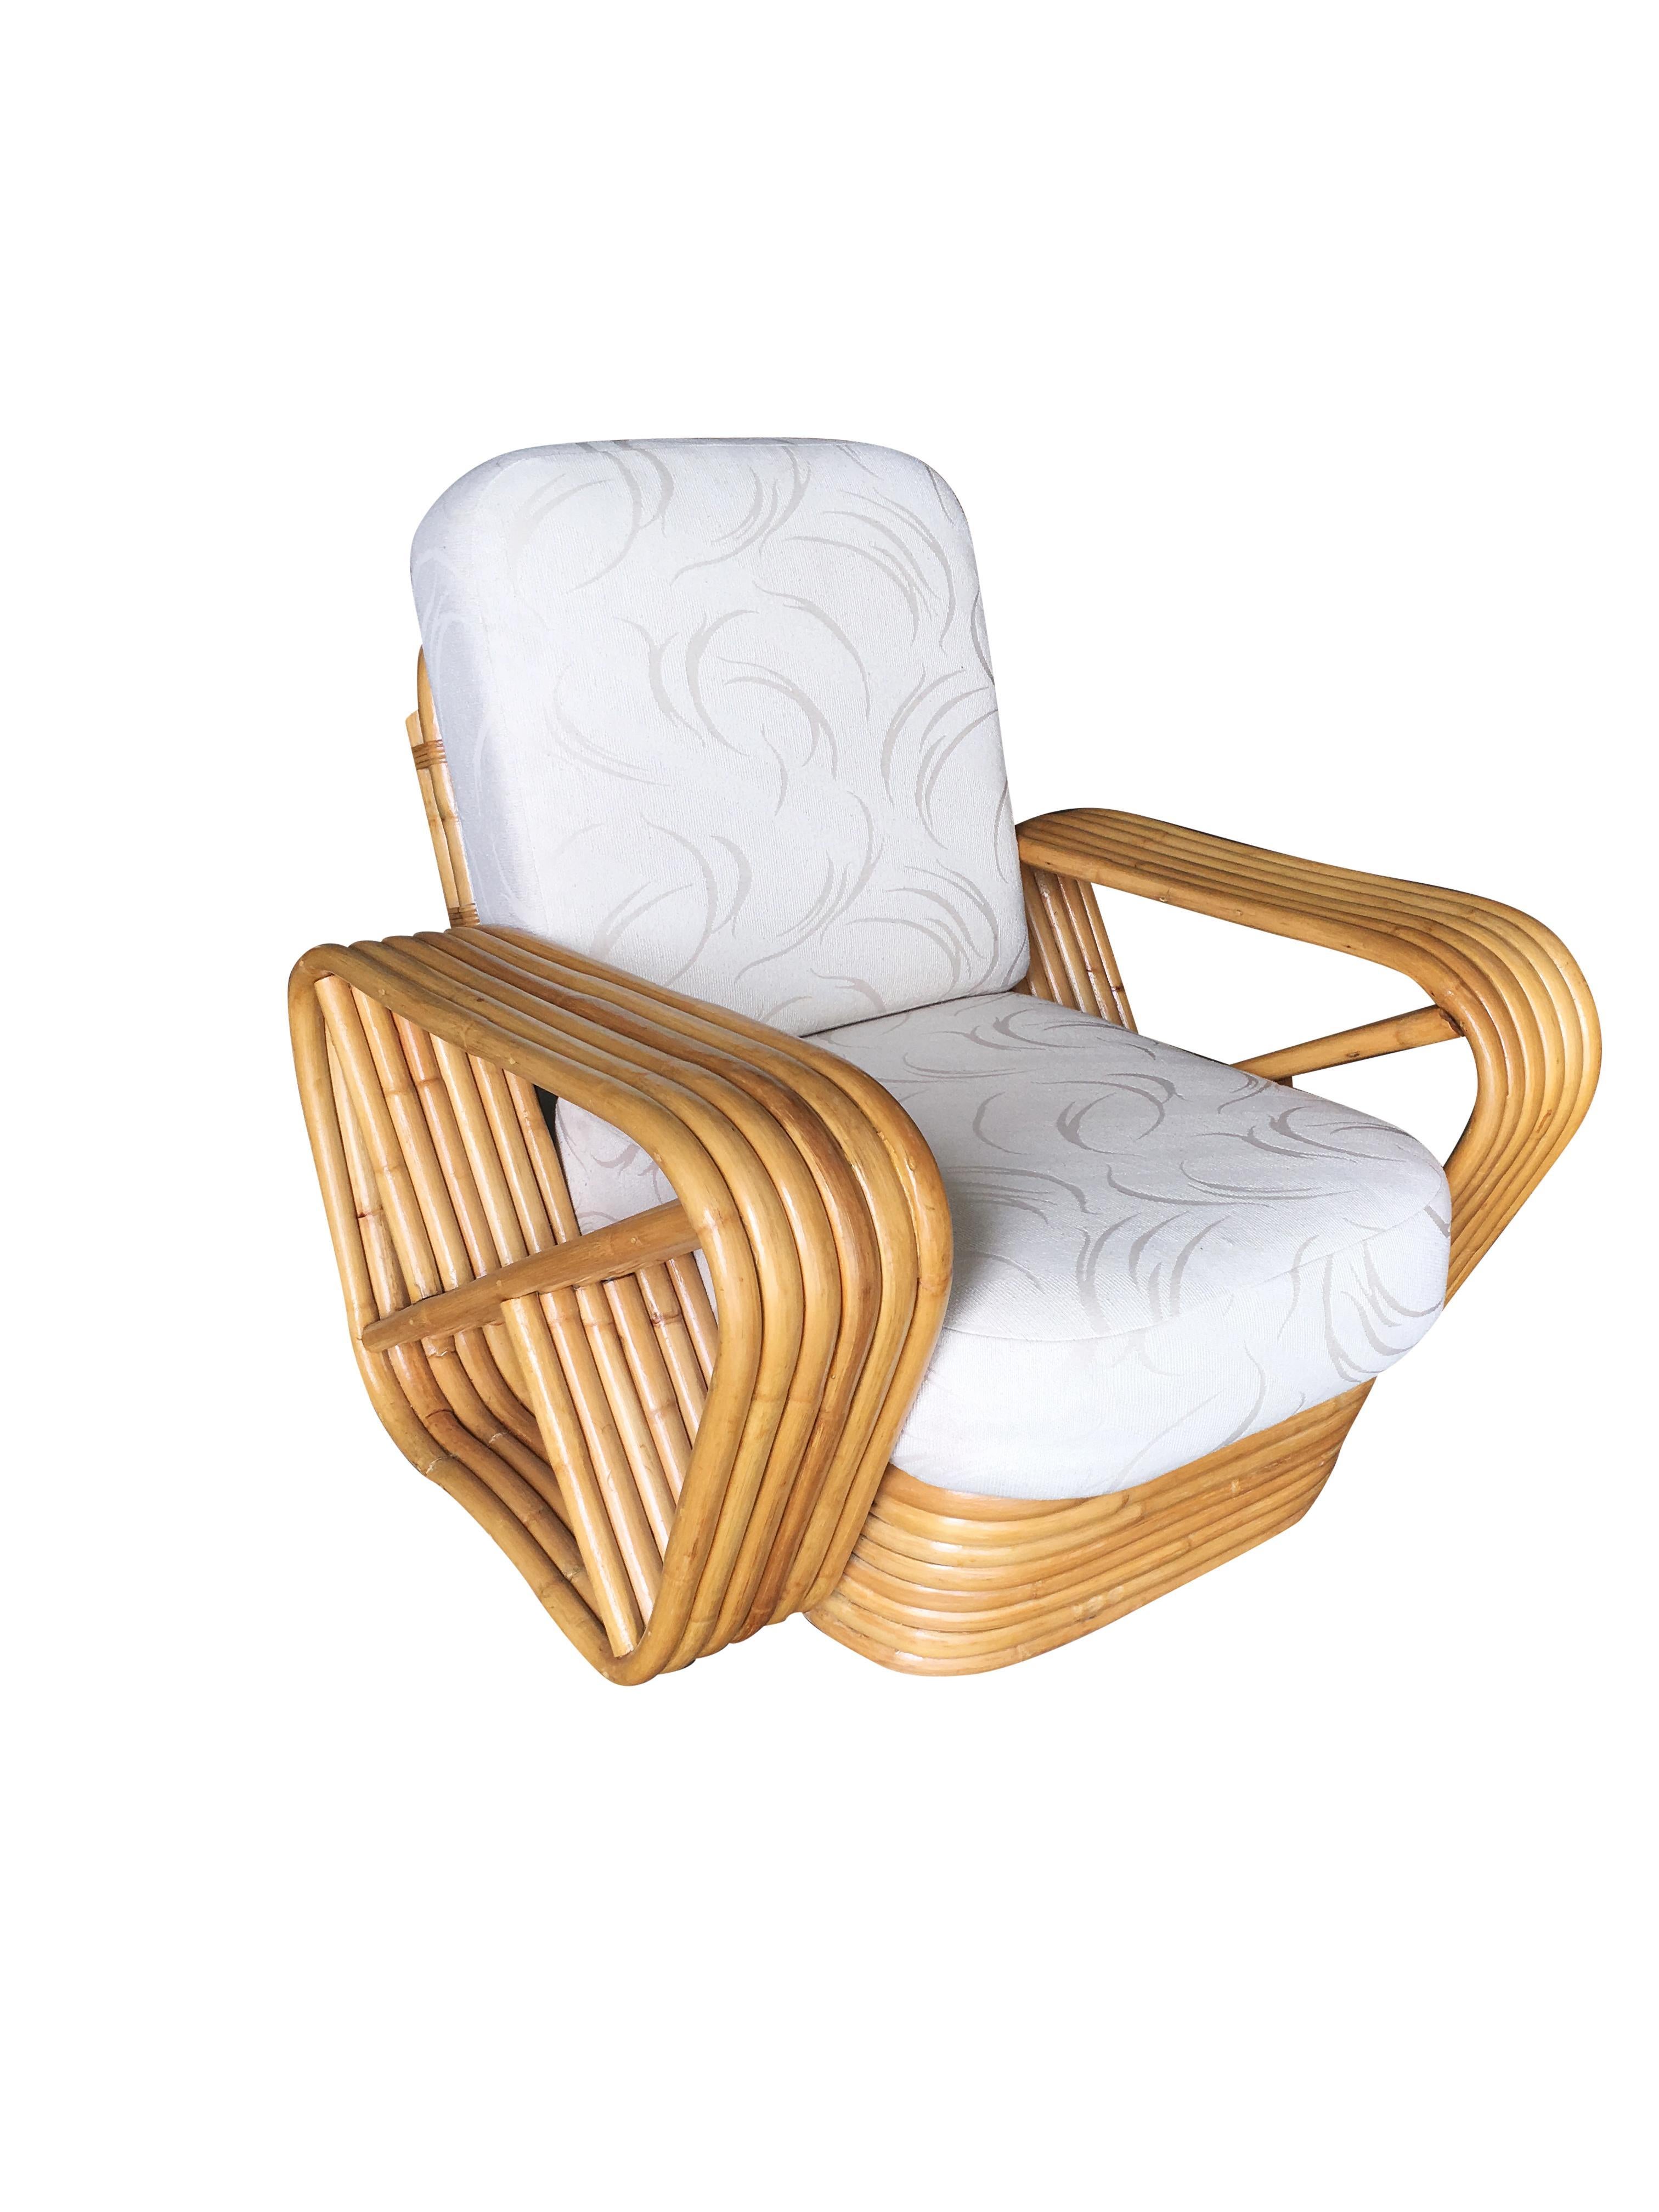 Rattan-Wohnzimmergarnitur im Stil von Paul Frankl mit passendem Sektionssofa und Sessel. Beide verfügen über die berühmten sechssträngigen, quadratischen Brezel-Seitenarme und den gestapelten Rattan-Sockel, der ursprünglich von Paul Frankl entworfen